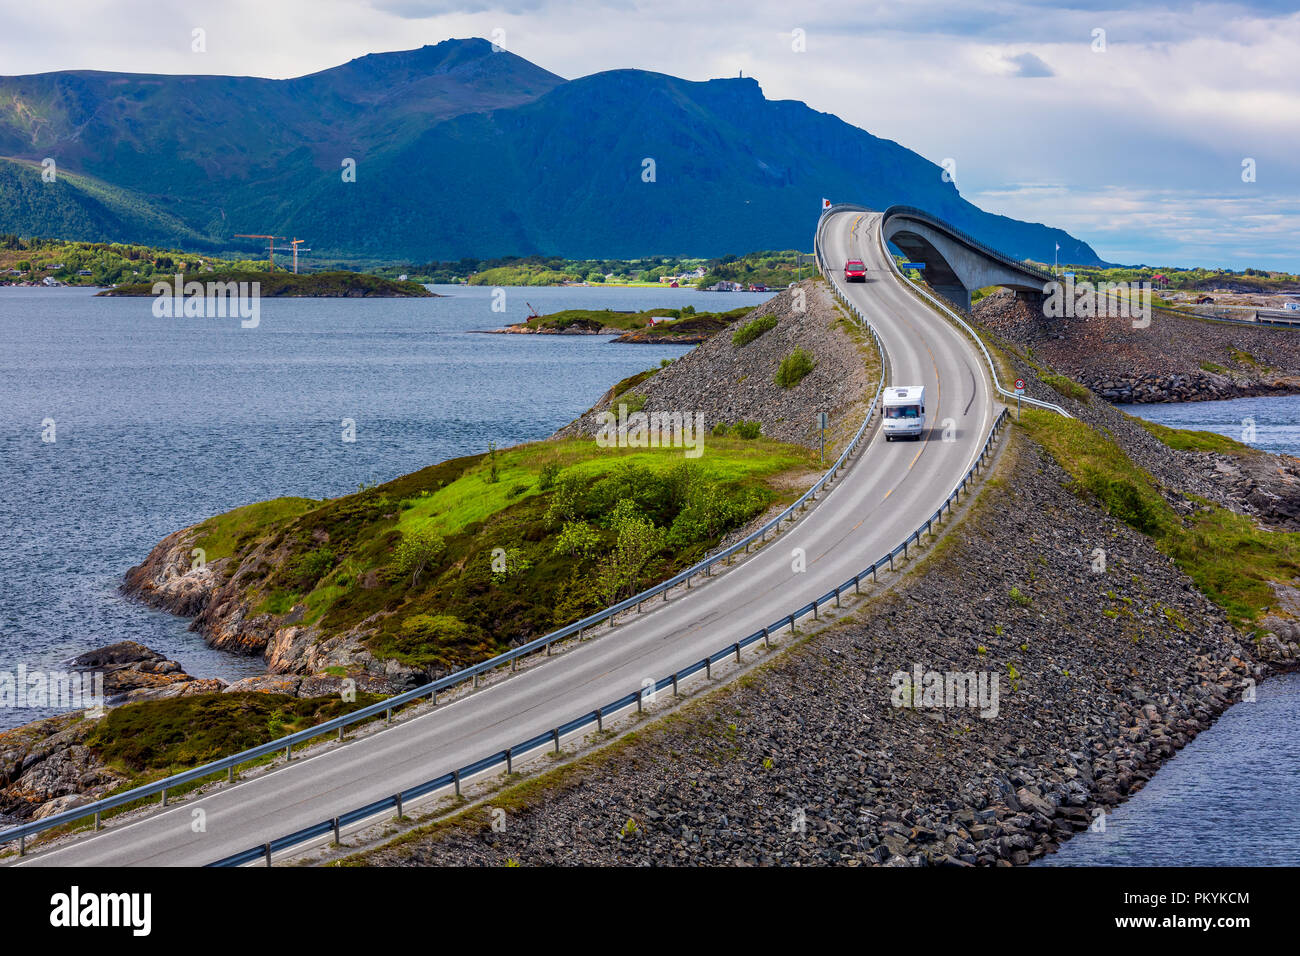 Caravan Auto fährt auf der Autobahn. Atlantik Straße oder den Atlantik Straße (atlanterhavsveien) den Titel als (Norwegische Bau von ausgezeichnet. Stockfoto